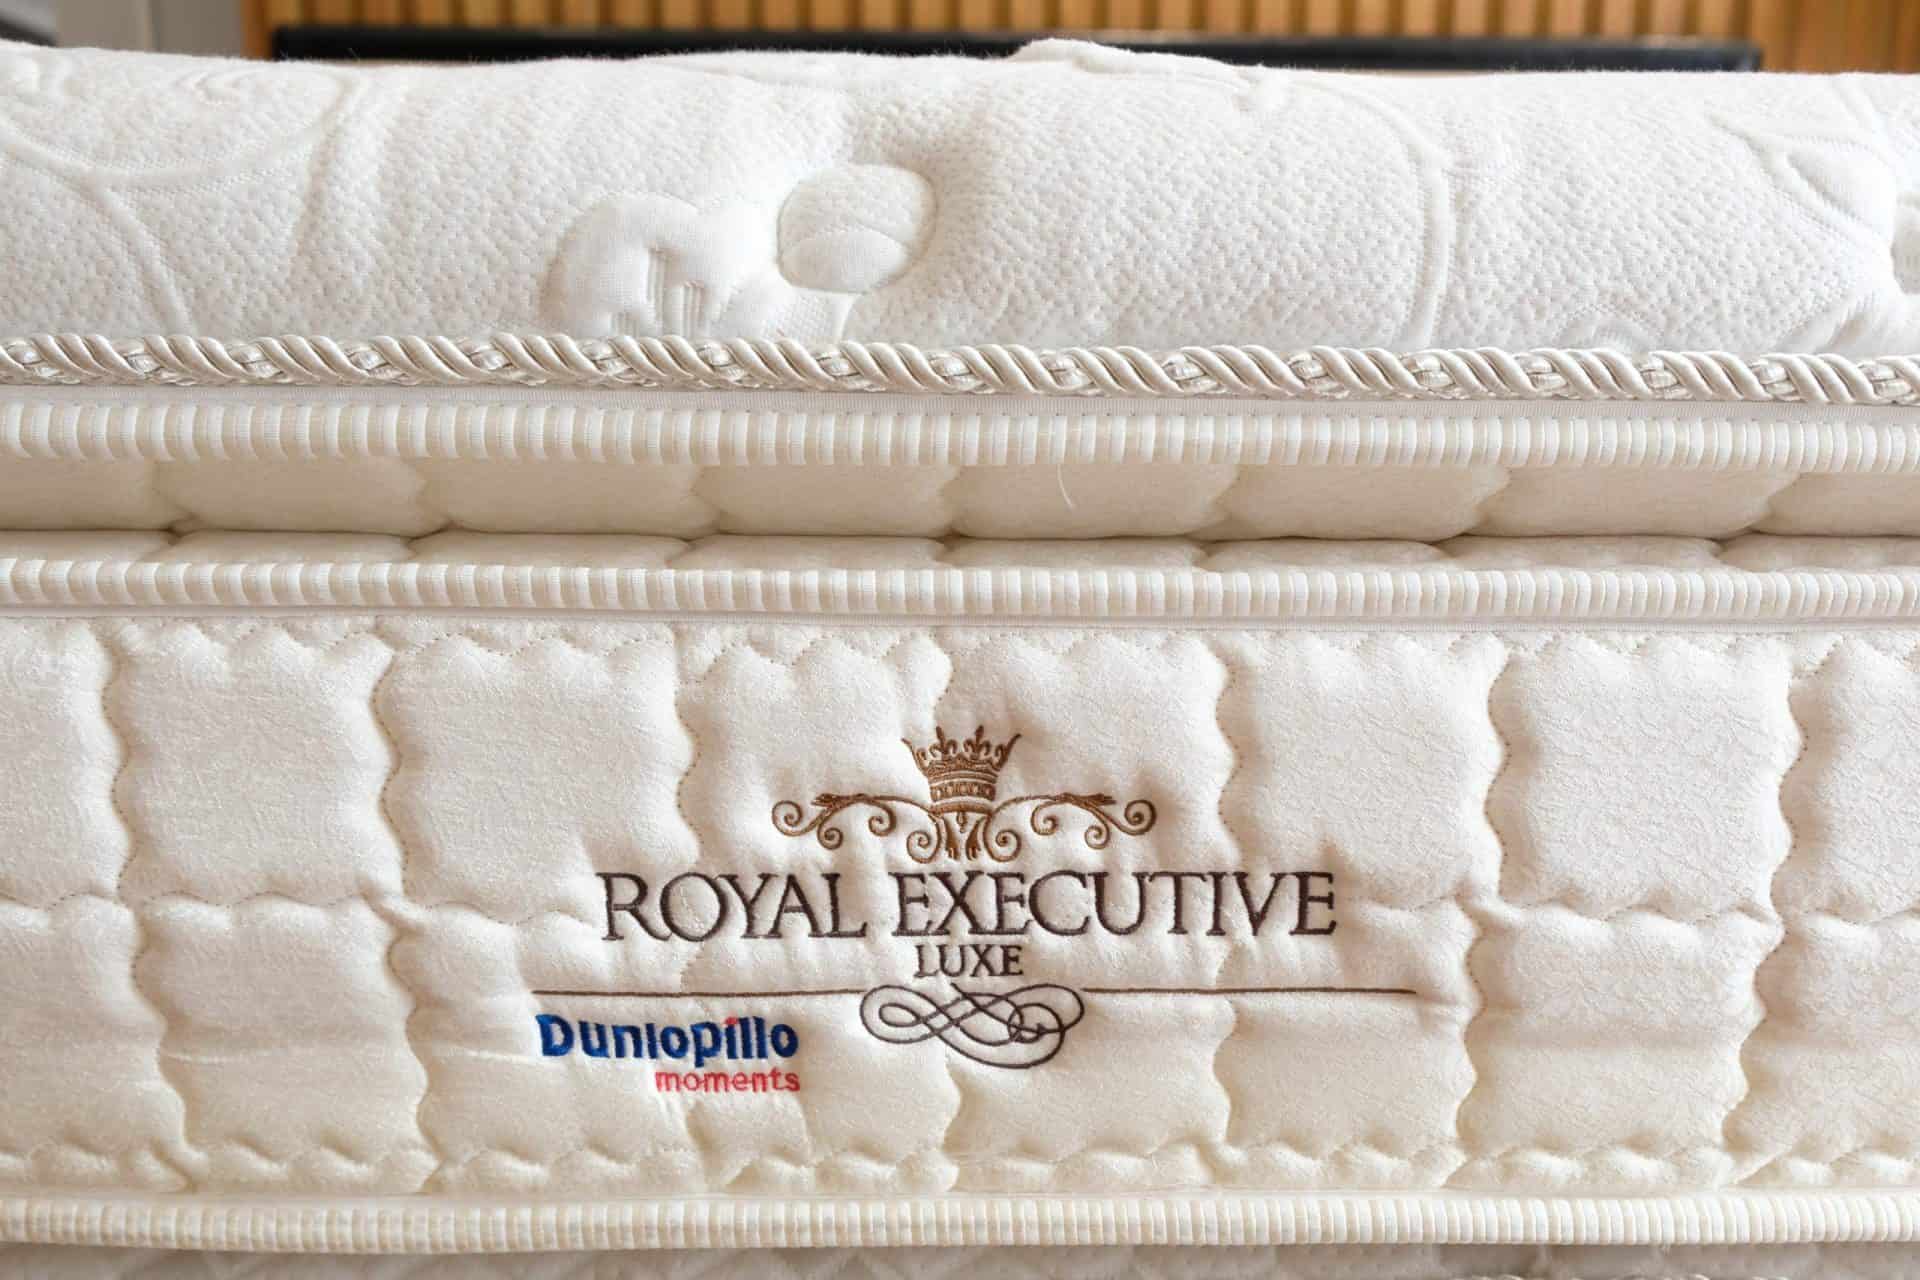 Bề mặt Box top của Nệm lò xo Dunlopillo Royal Executive được thiết kế ưu việt